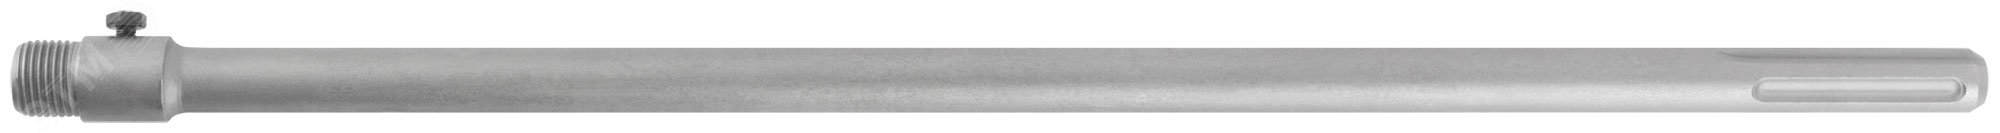 Удлинитель с хвостовиком SDS-MAX для коронок по бетону, резьба М22, длина 530 мм 33460 FIT - превью